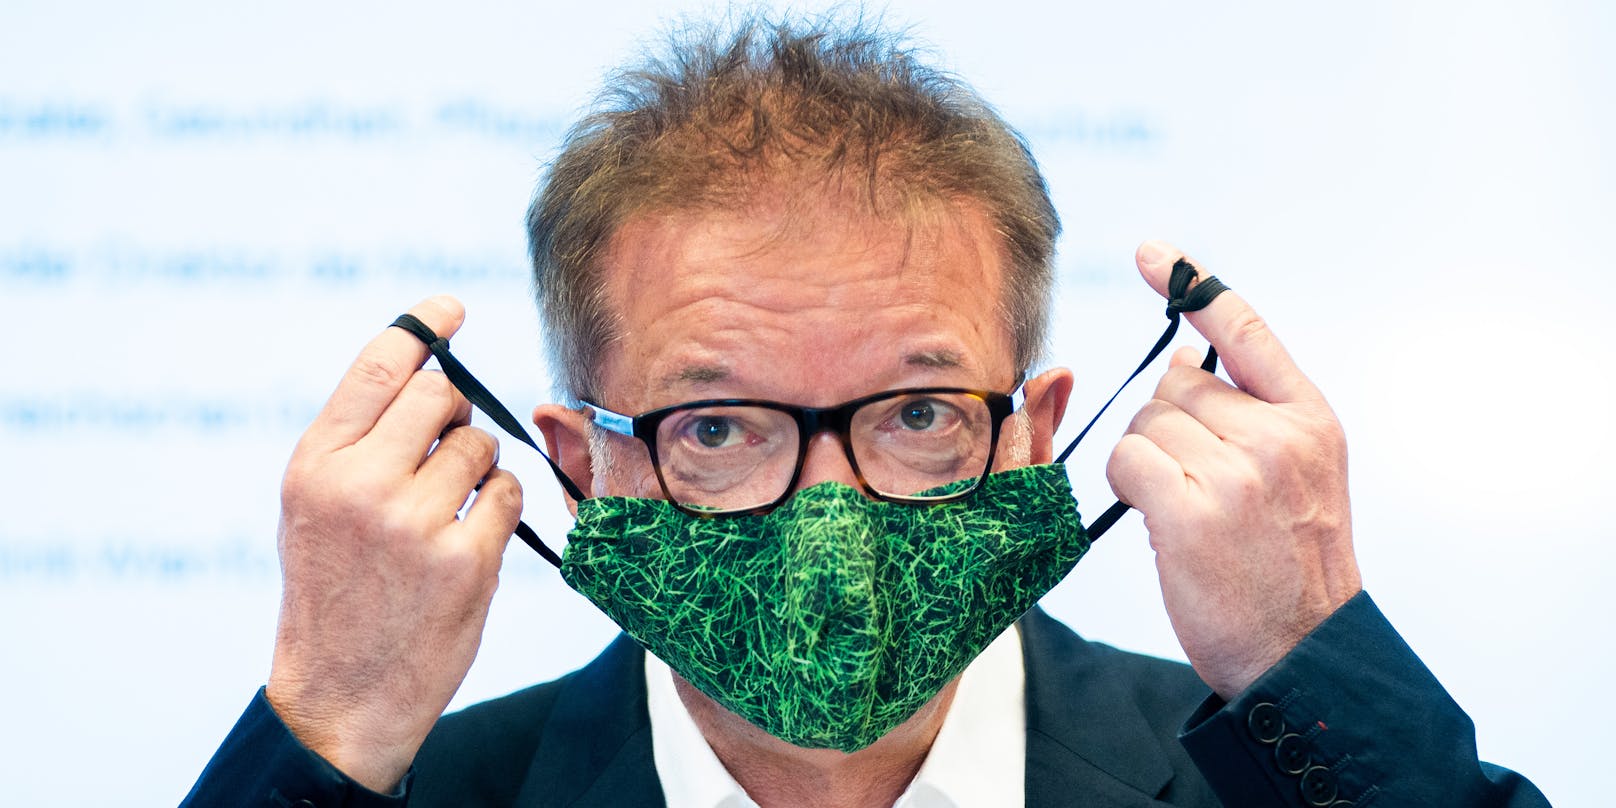 Gesundheitsminister Rudi Anschober mit Maske